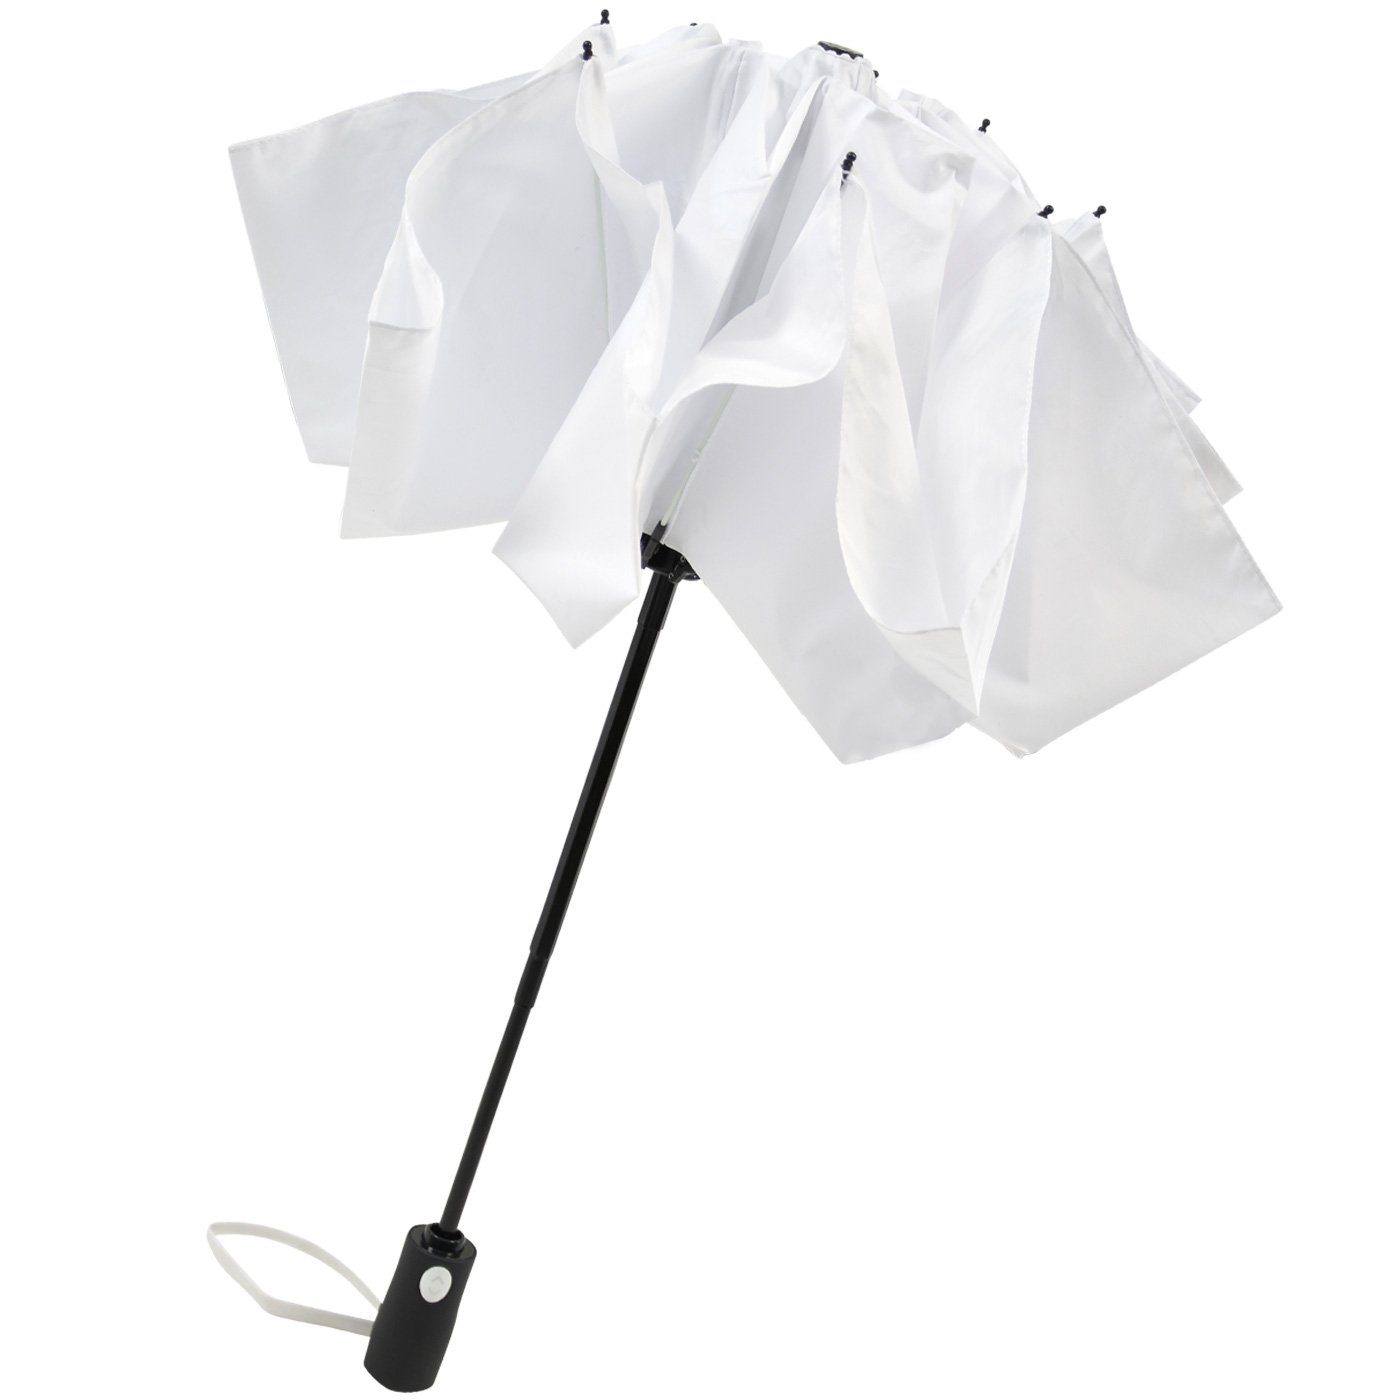 Taschenregenschirm Speichen öffnender mit Fiberglas-Automatiksch, weiß iX-brella umgekehrt bunten Reverse stabilen